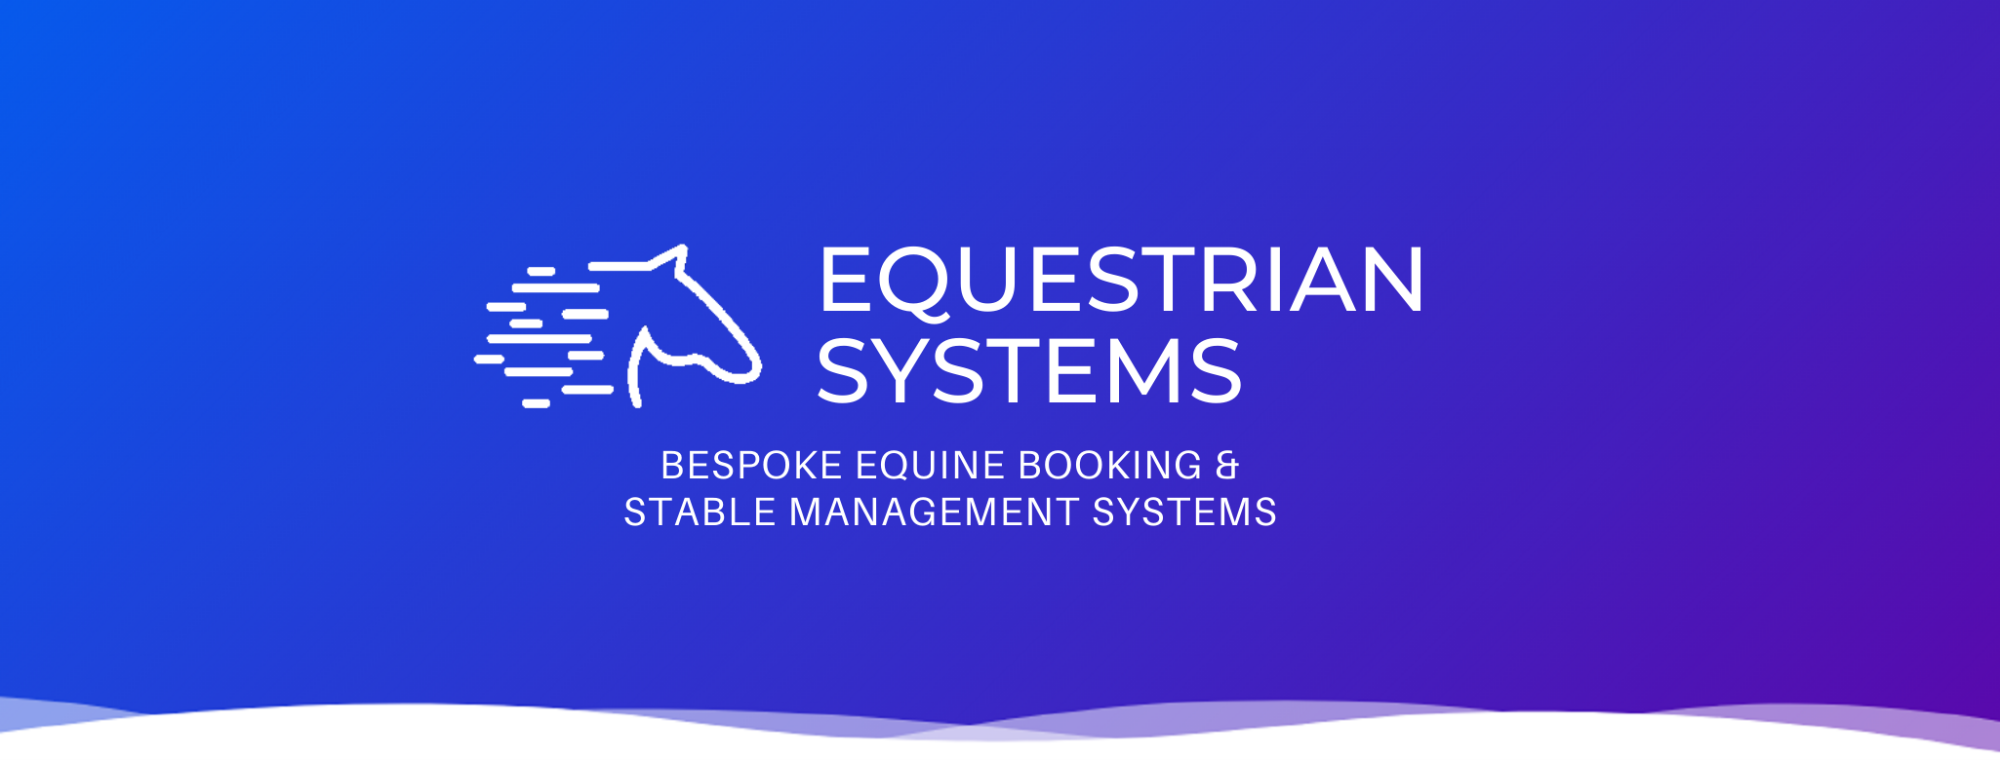 Equestrian systems logo